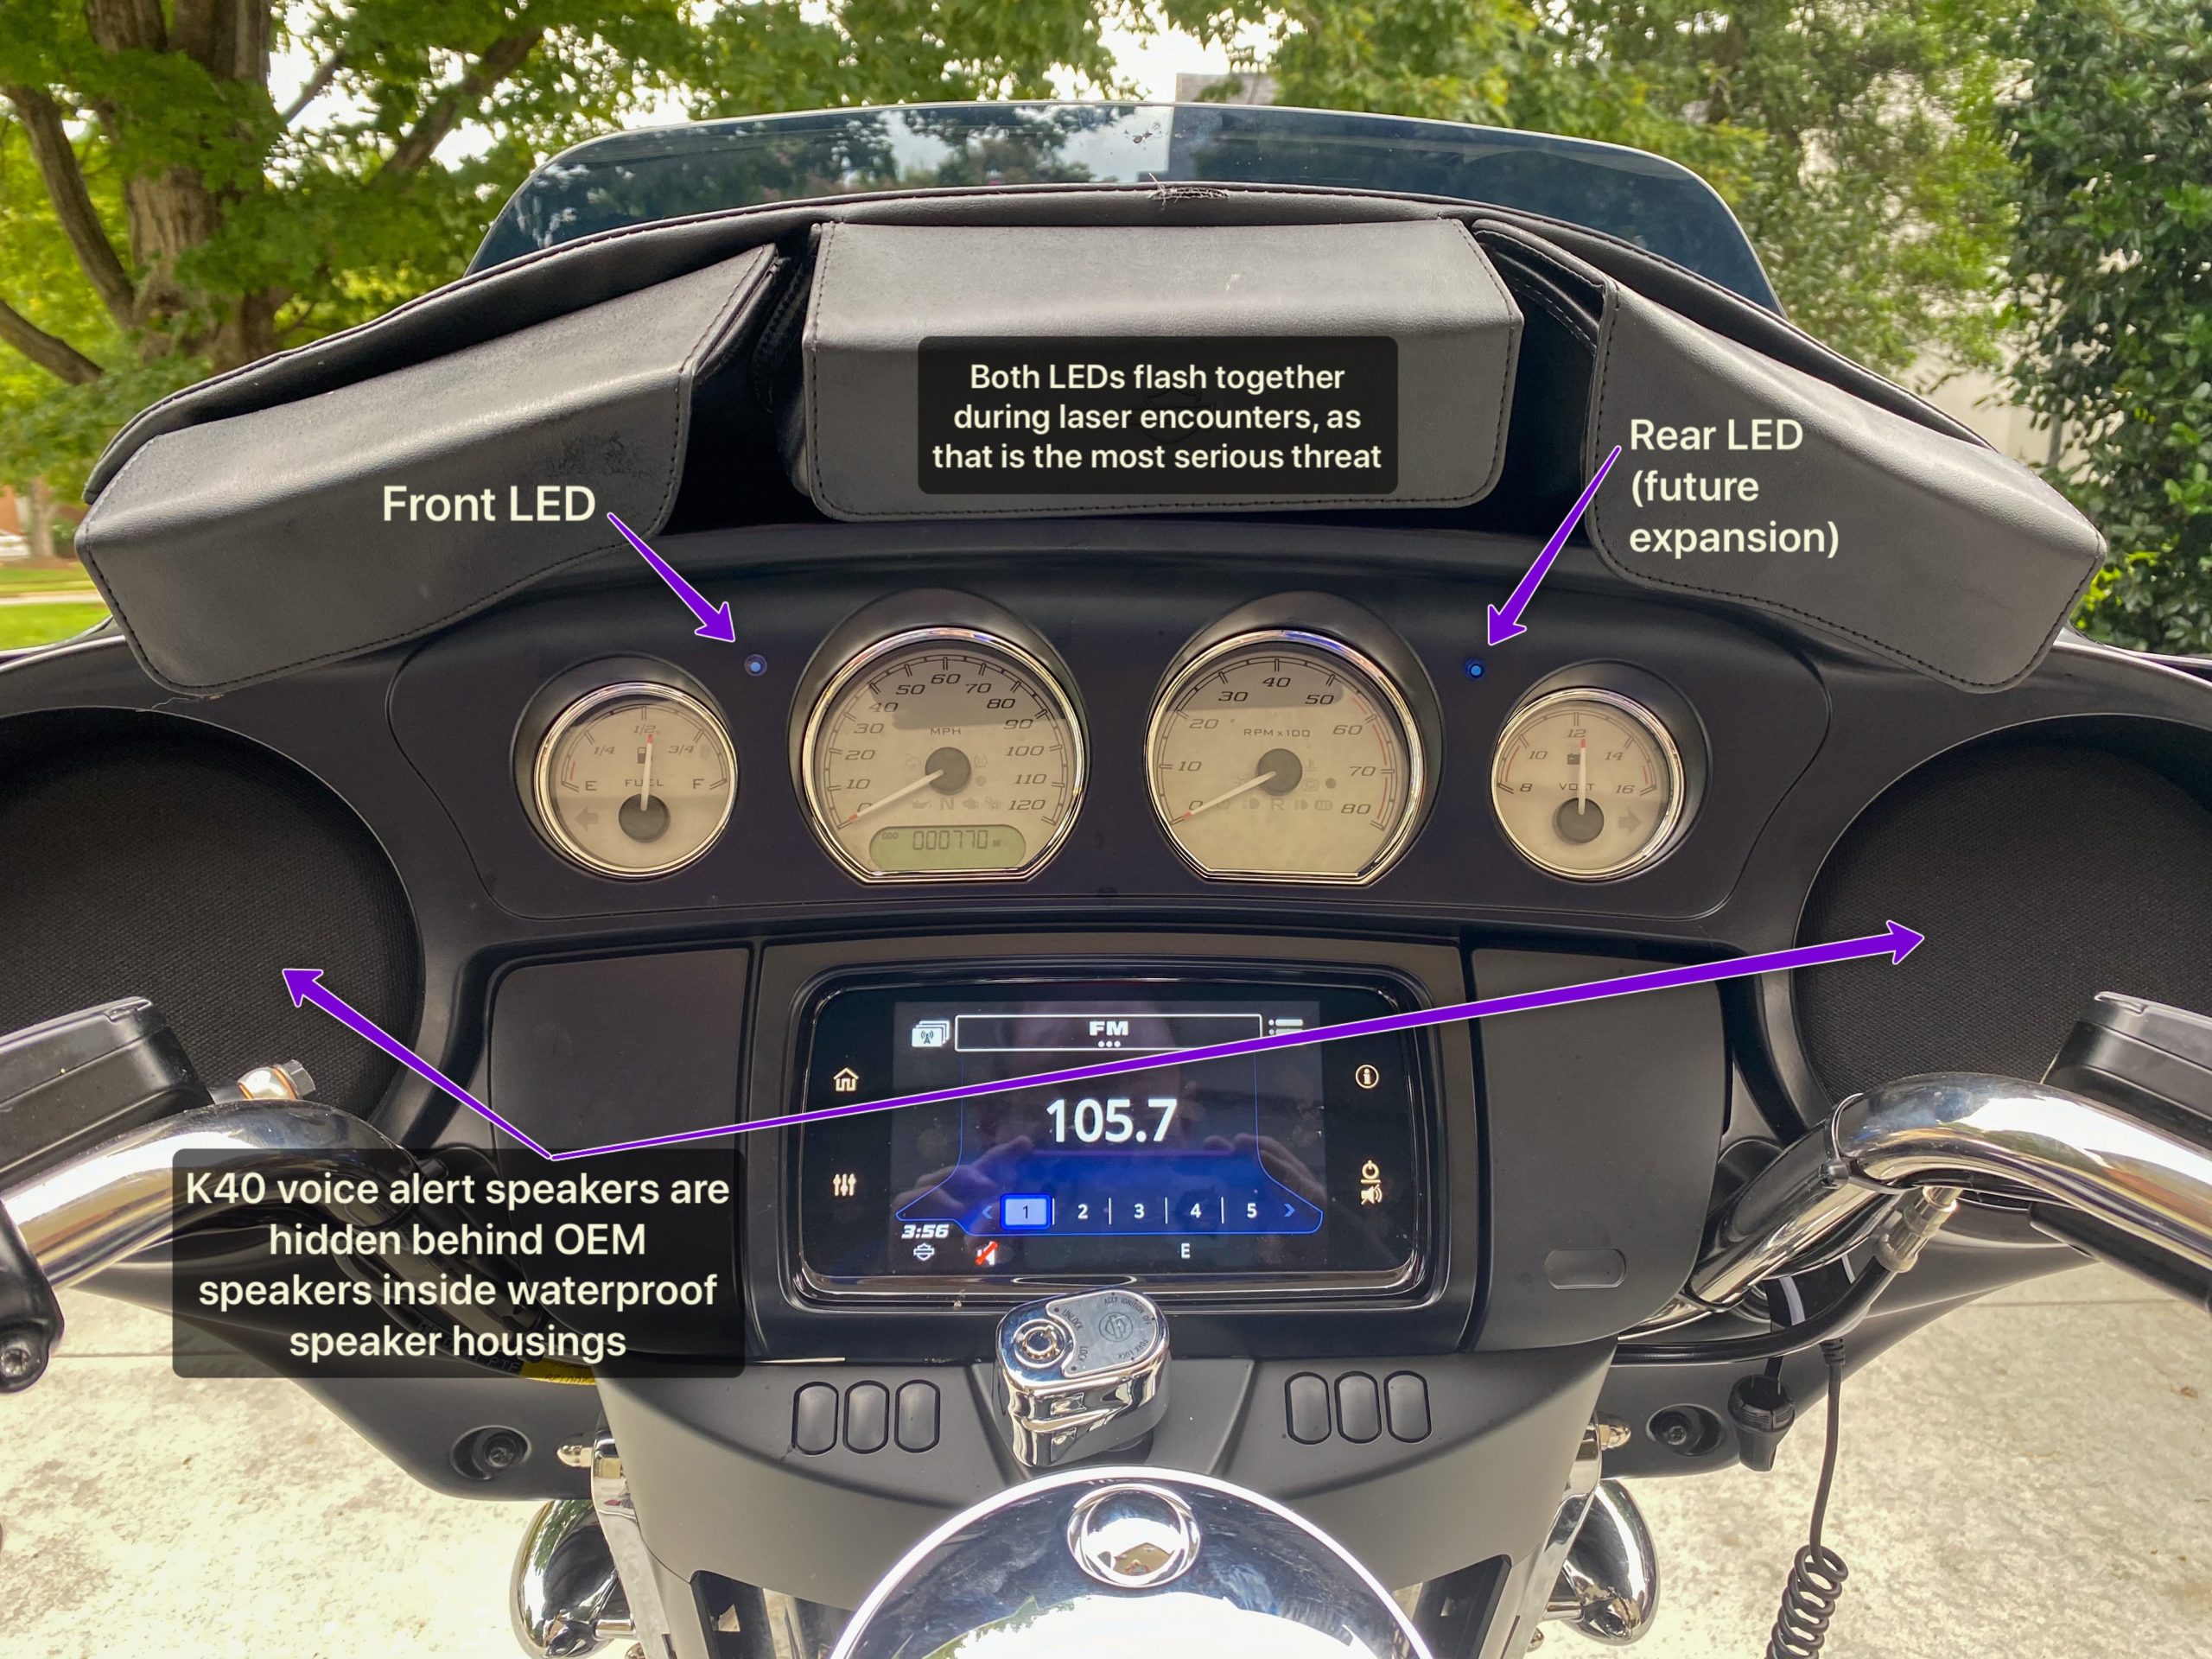 K40 Radar detector alert led's in a 2020 Harley Davidson Street Glide